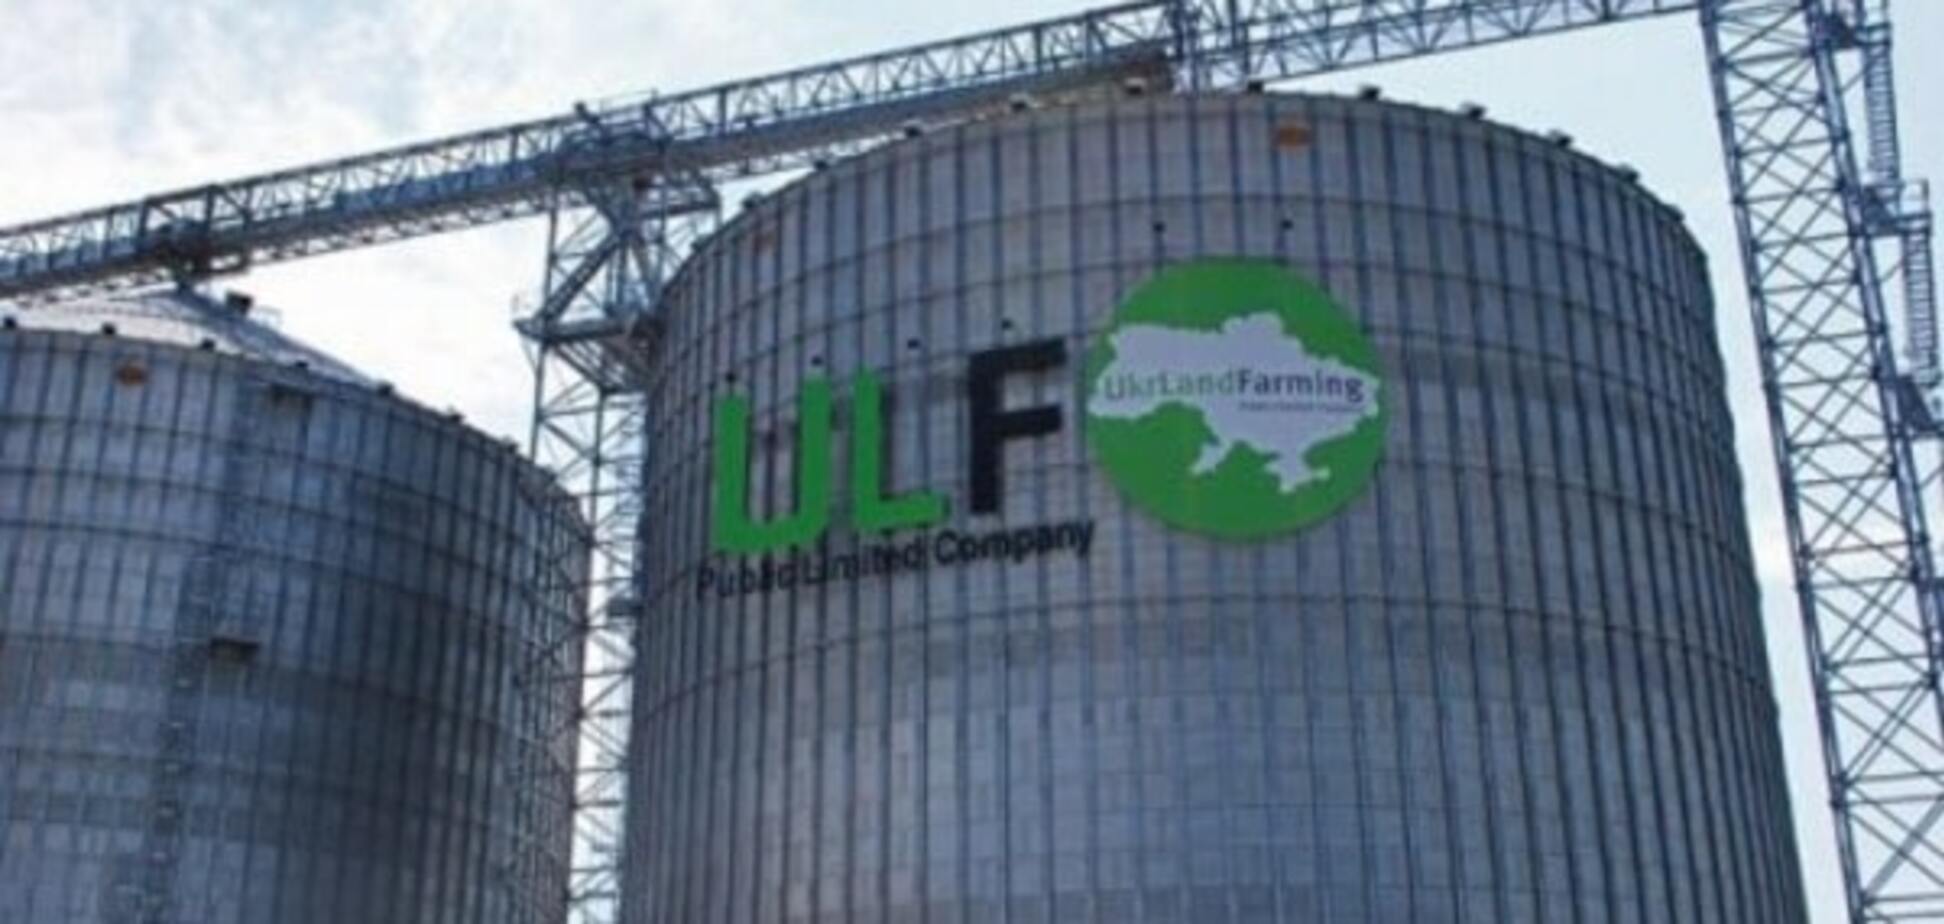 UkrLandFarming будет одновременно строить обе очереди зернового терминала в 'Южном'